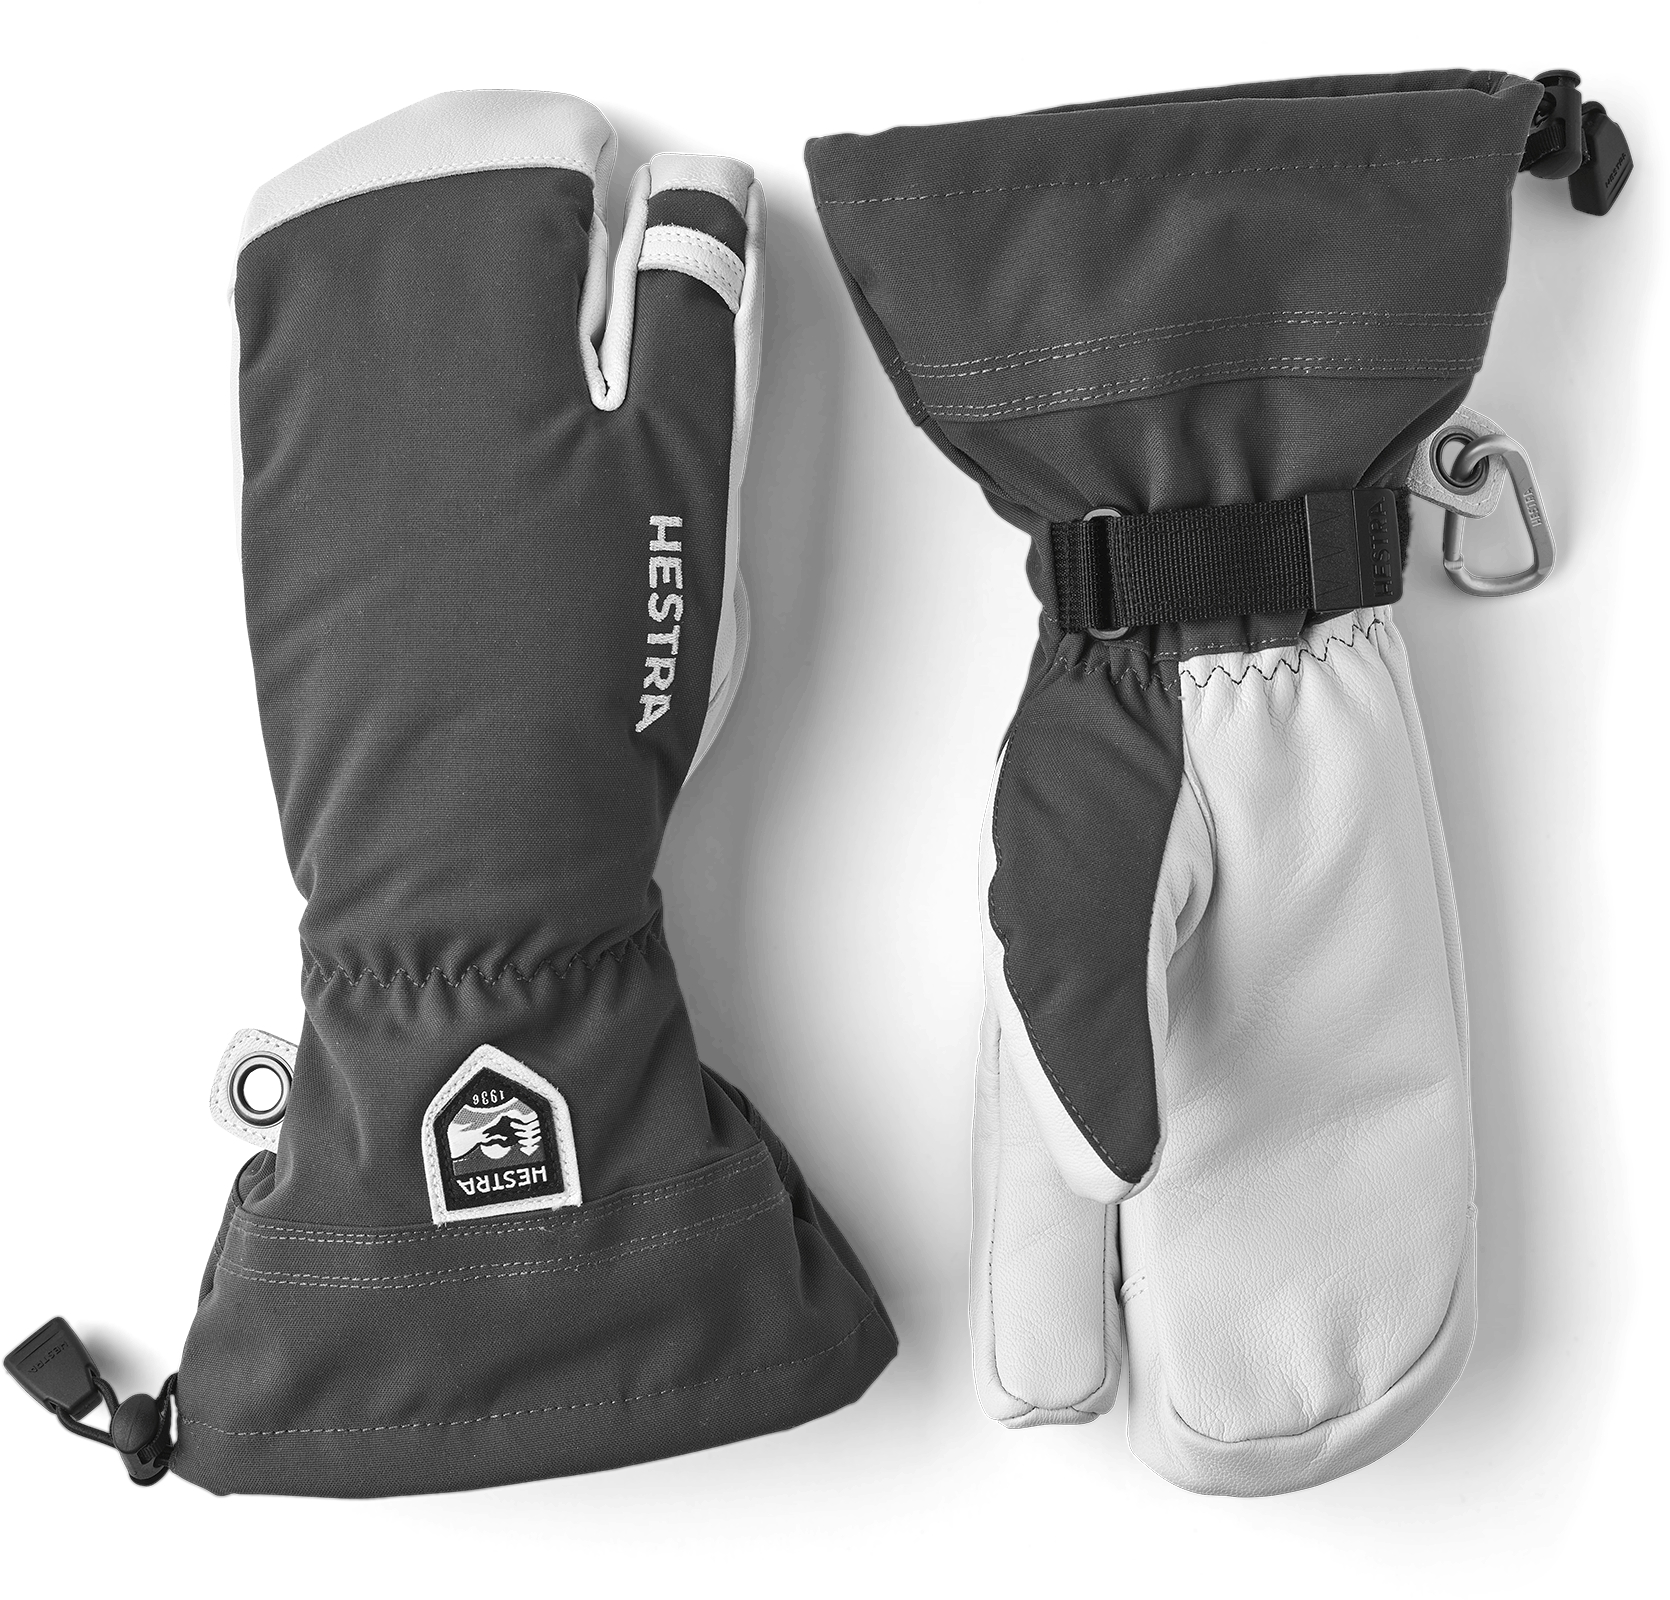 Hestra Men's Army Leather Heli Ski 3-finger Gloves